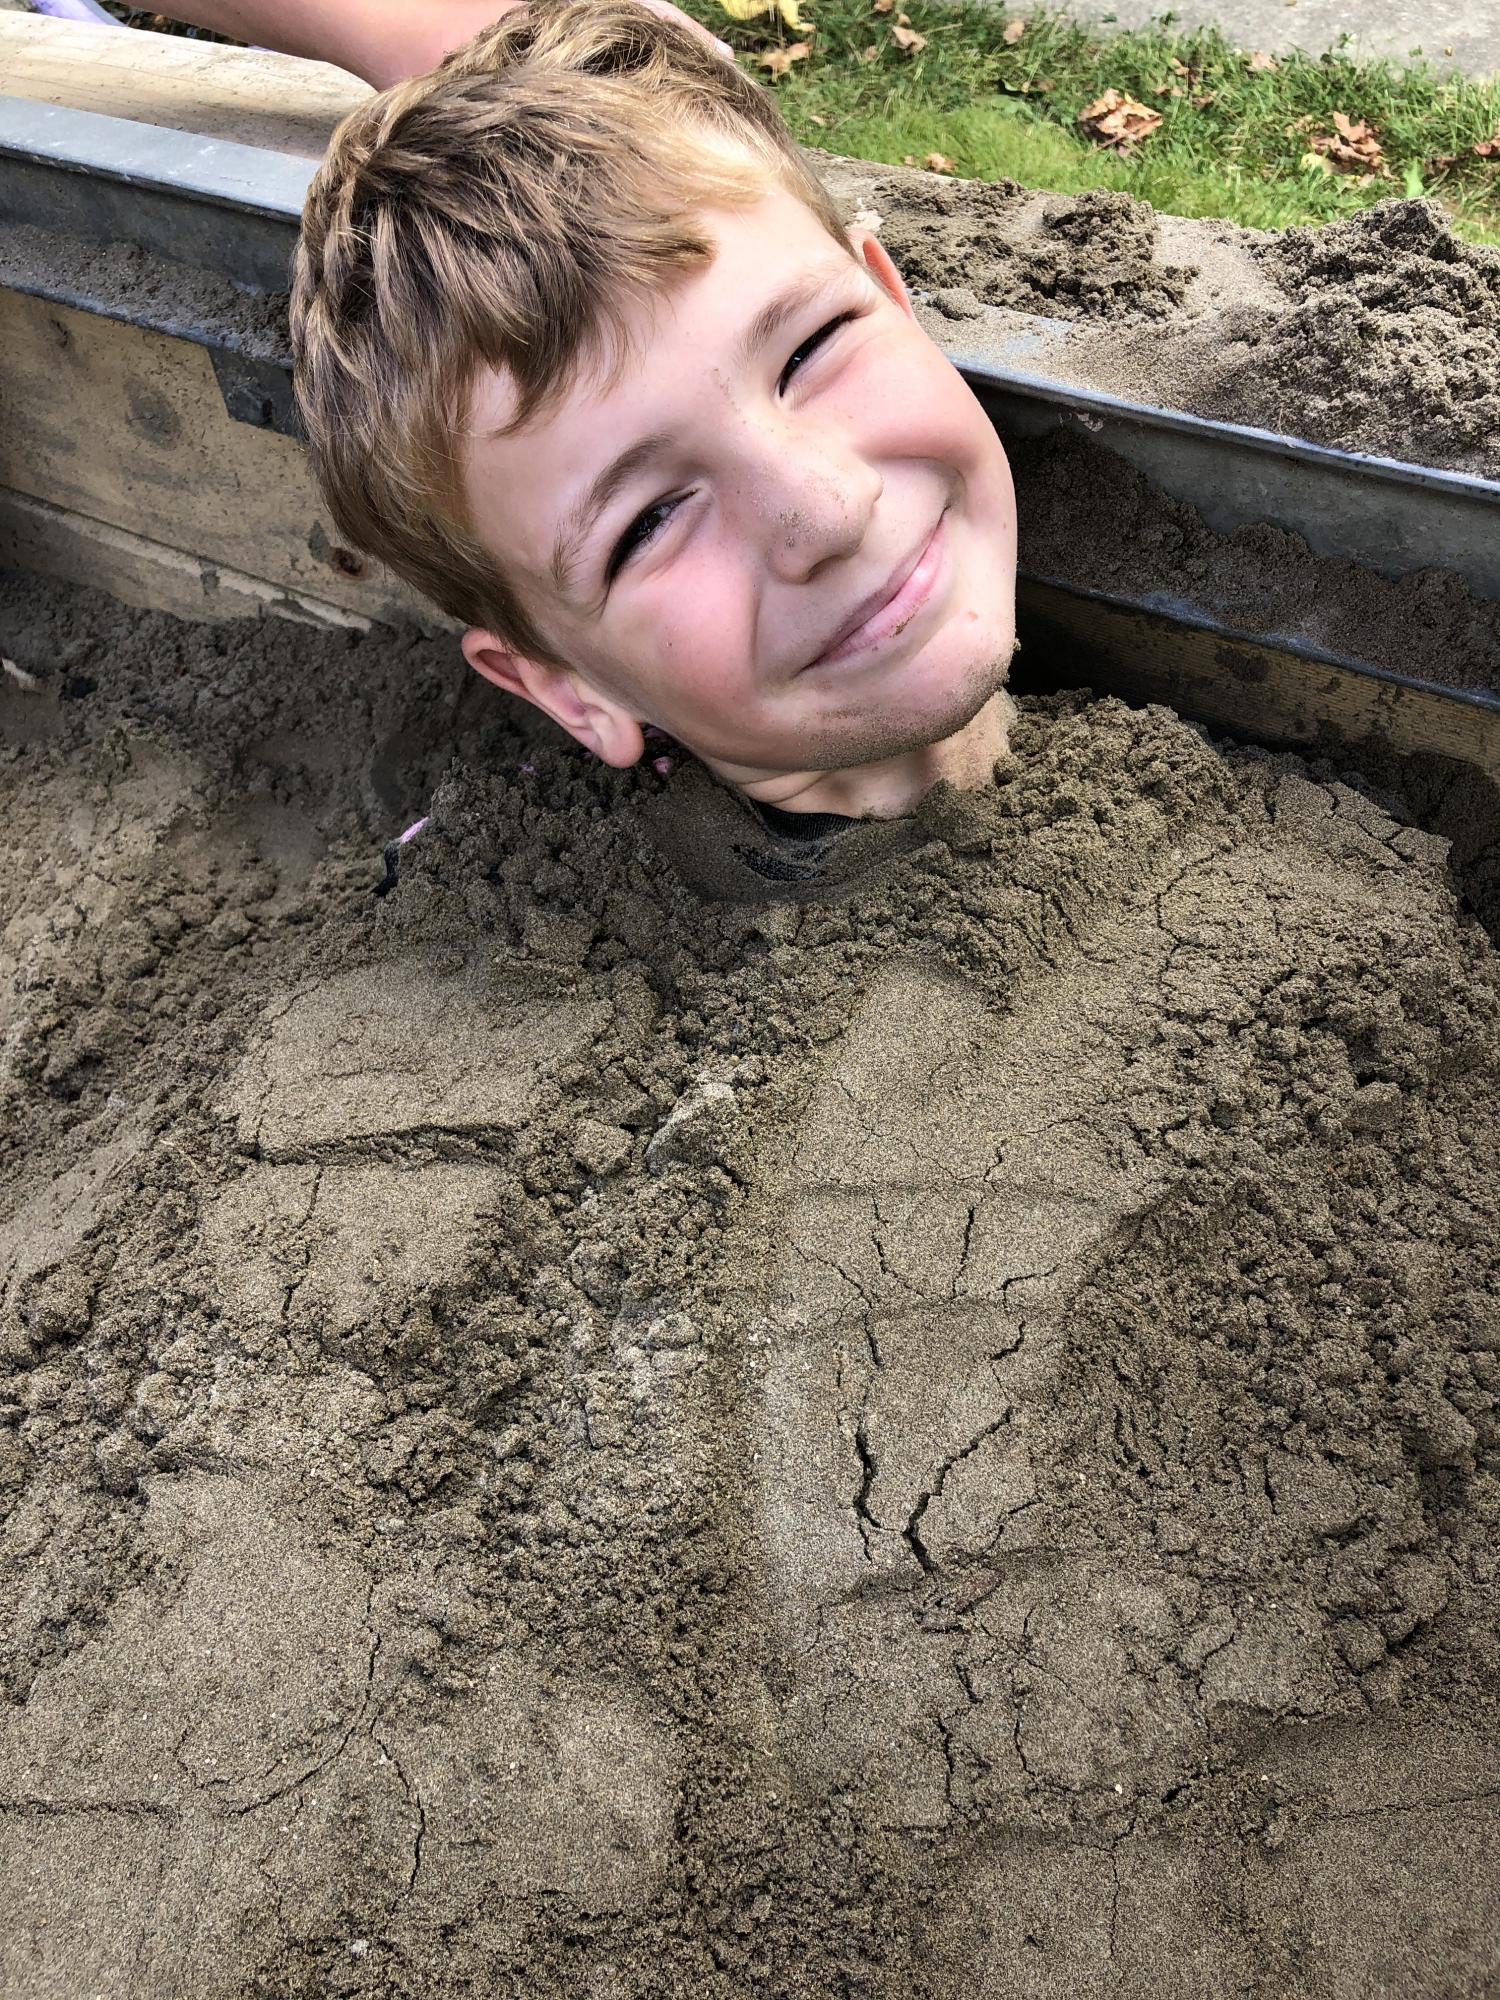 Sandpit Fun!